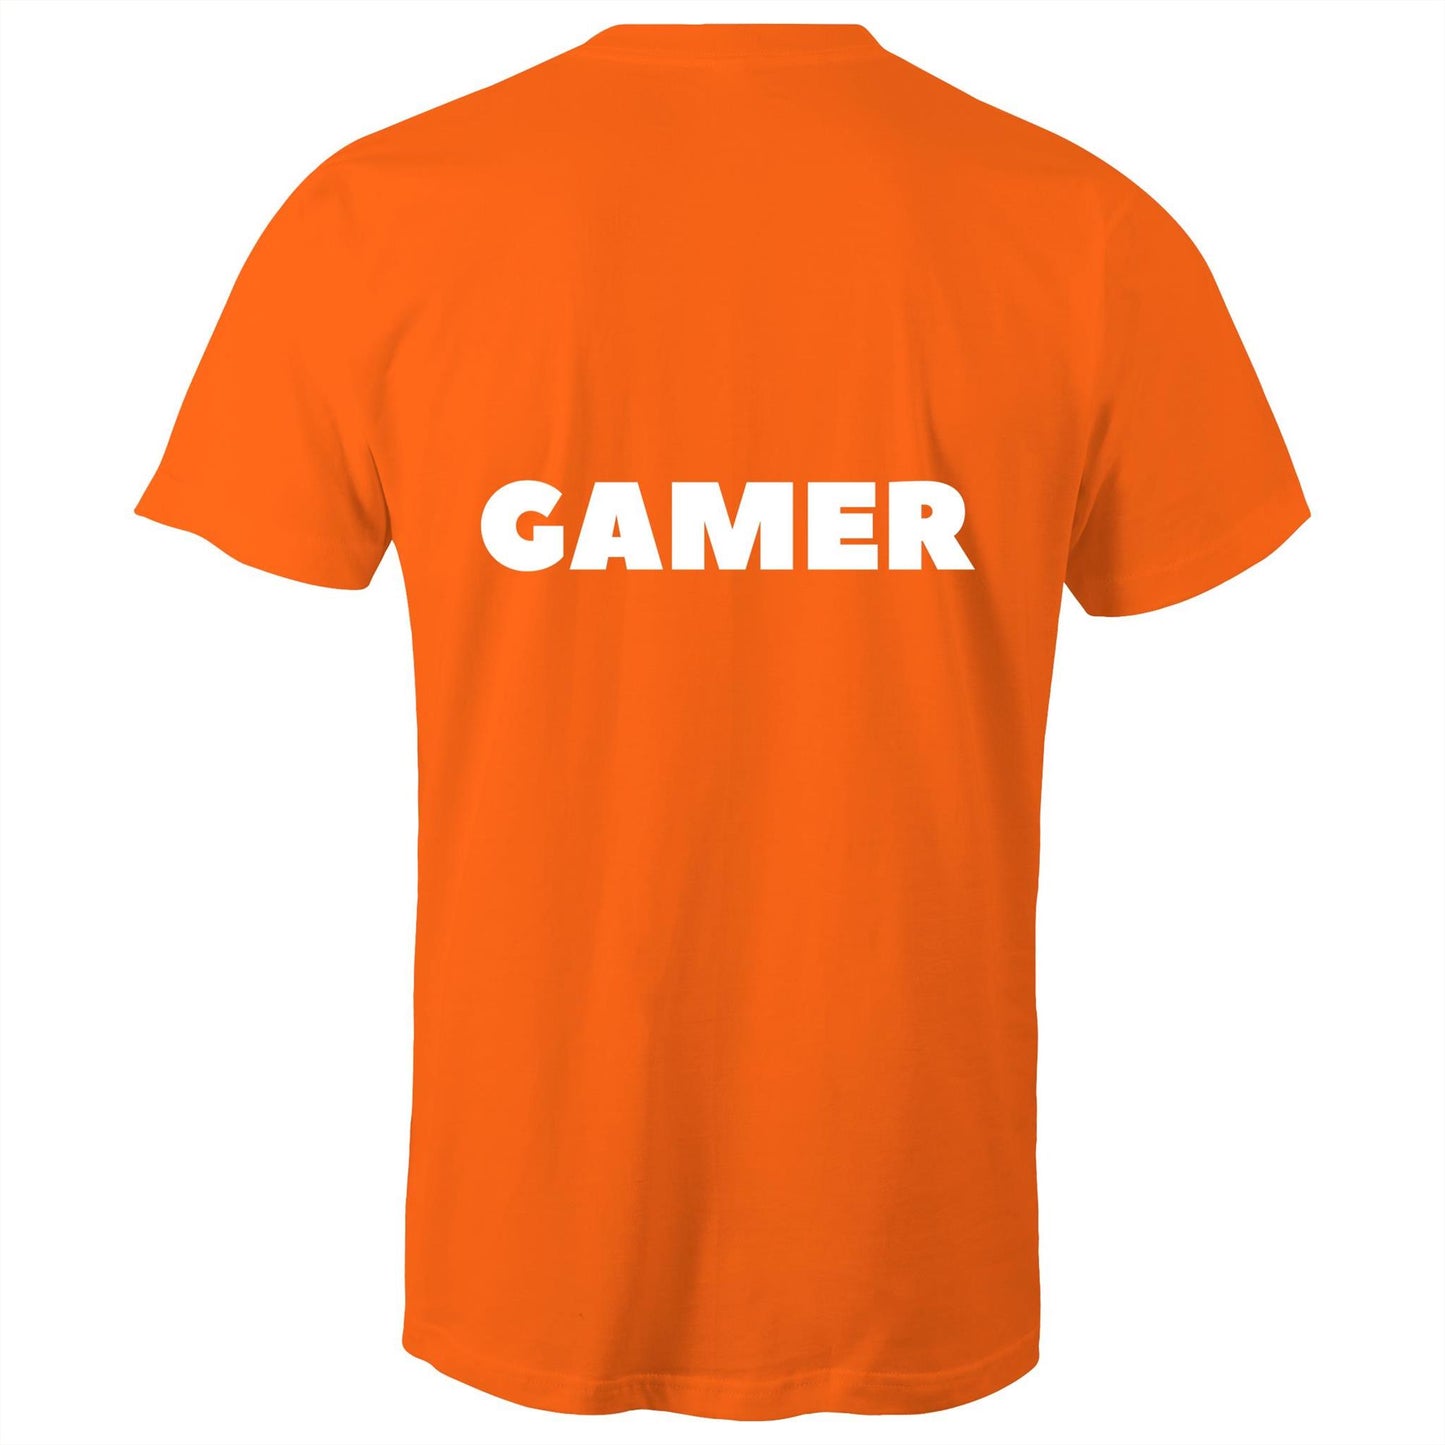 GAMER - Unisex T-Shirt